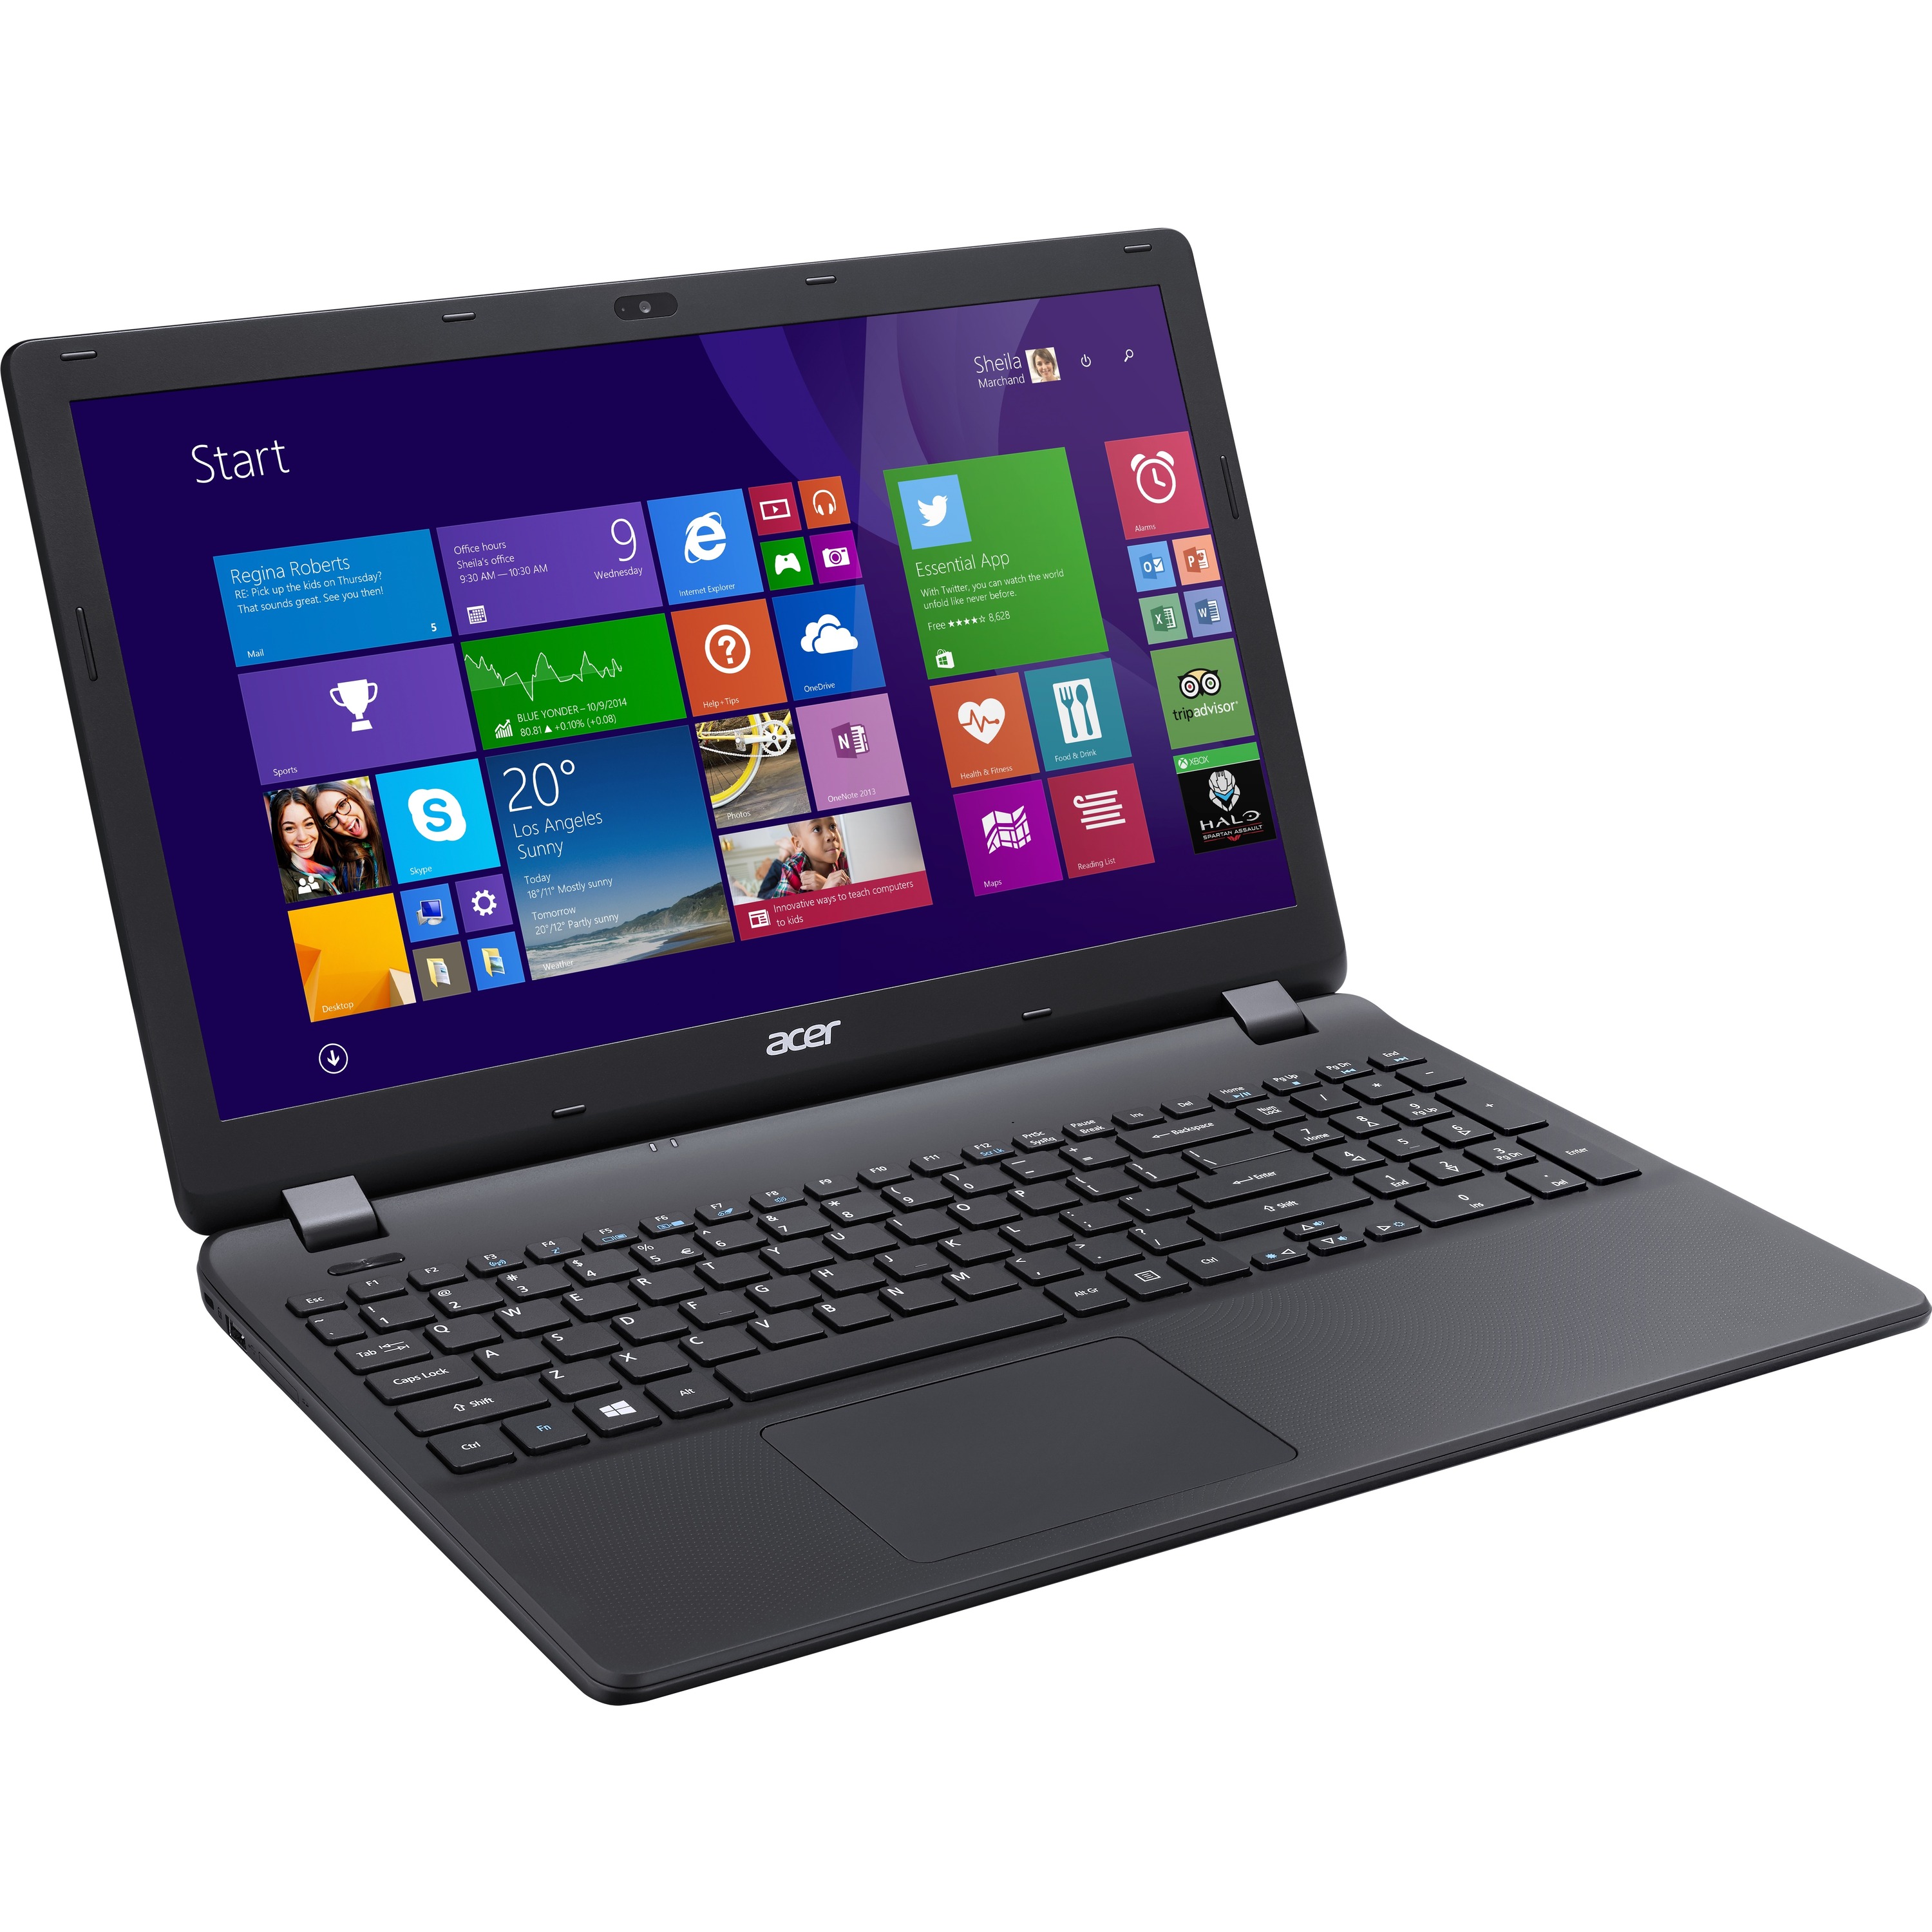 Acer Aspire Laptop Celeron N2840 Dual Core 216ghz 4gb Ram 500gb Hdd Windows 81 Ebay 5437